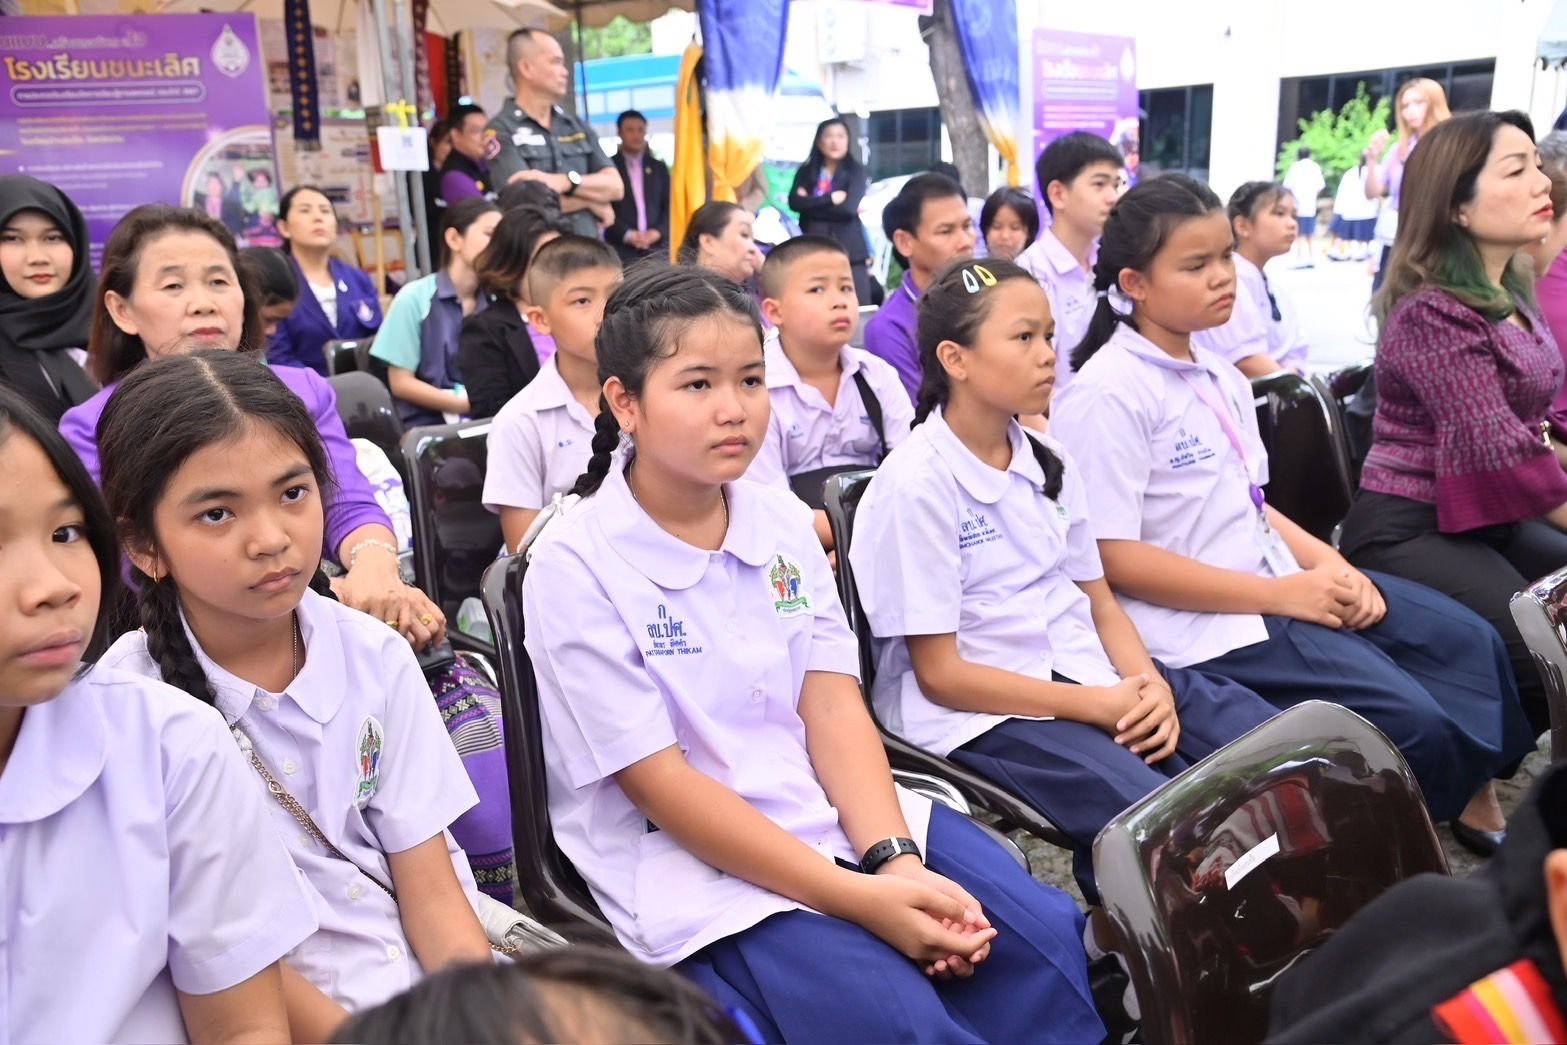 “7 มิถุนายน วันสหกรณ์นักเรียน” ส่งเสริมการจัดการเรียนรู้การสหกรณ์ในโรงเรียนทั่วประเทศ